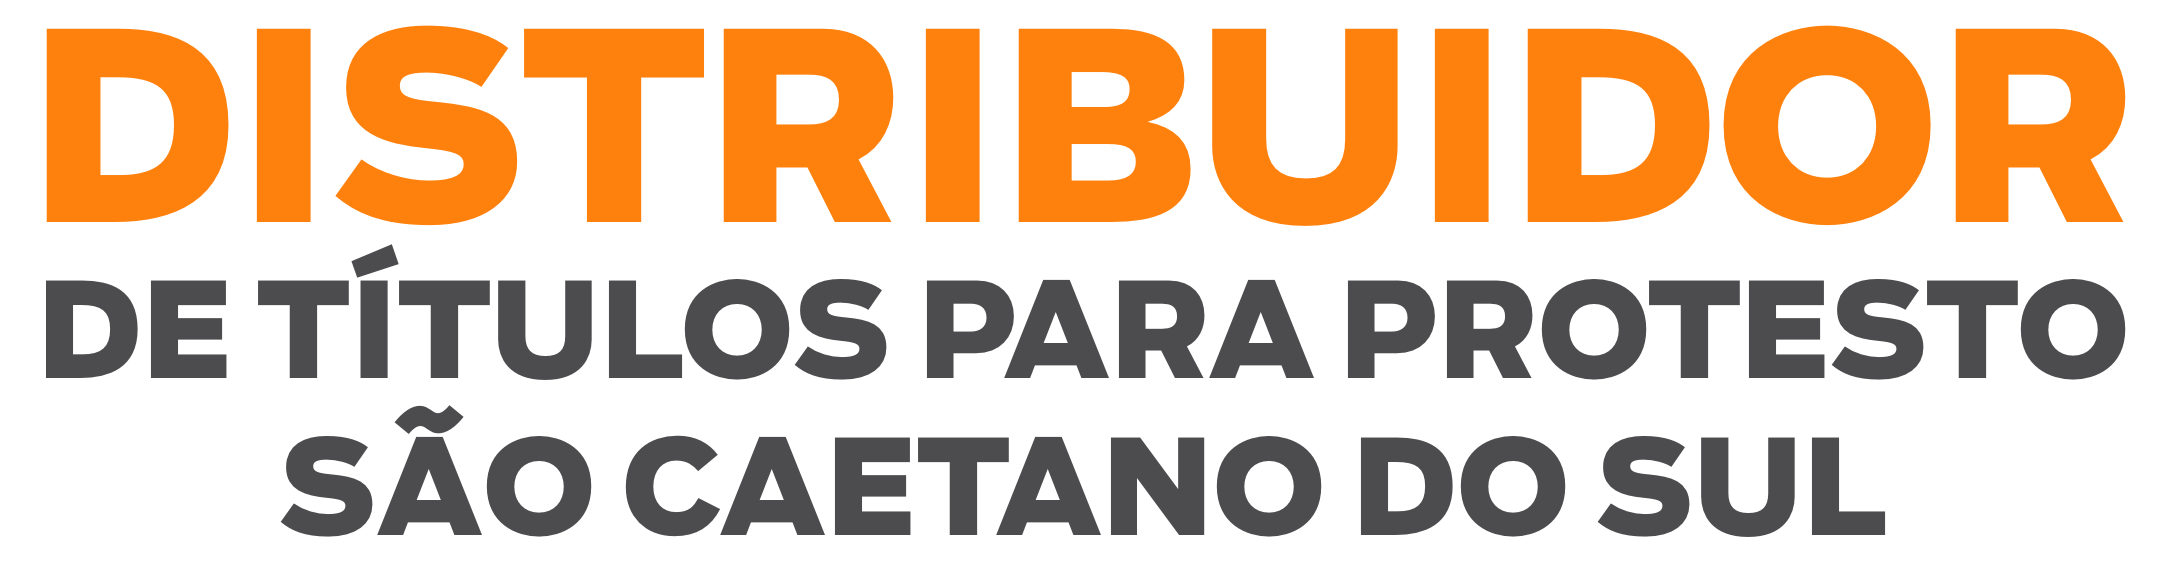 Distribuidor de títulos para protestos de São Caetano do Sul